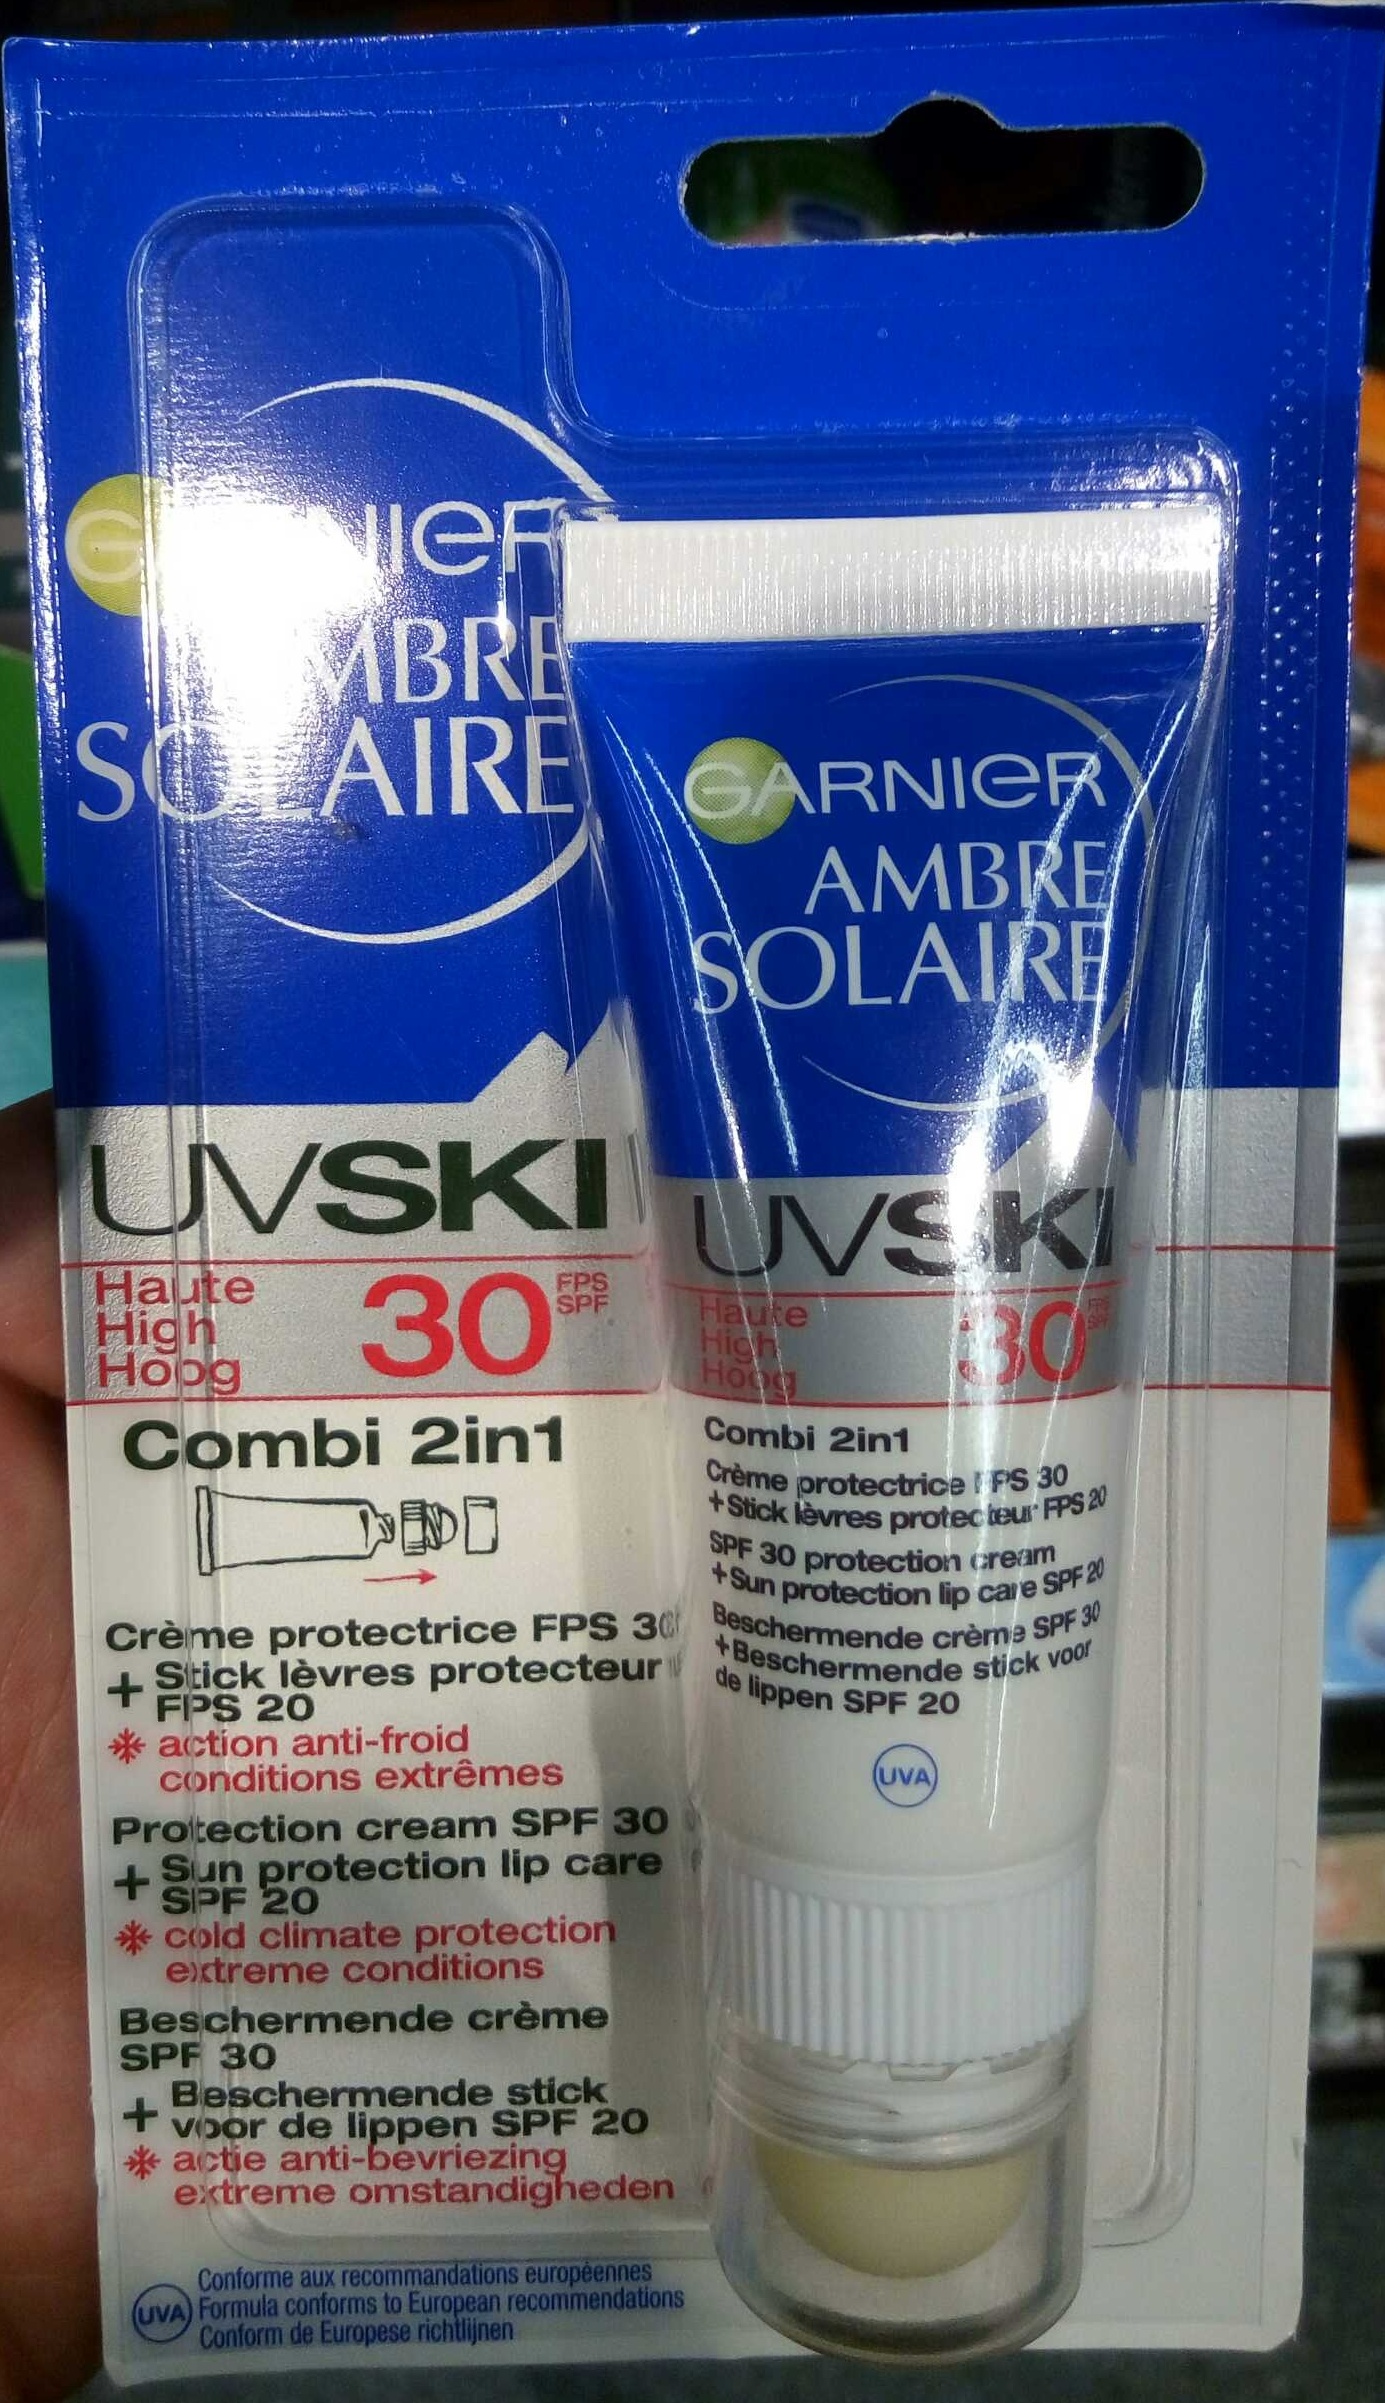 Ambre Solaire UV Ski 30 Combi 2in1 Crème protectrice + Stick lèvres protecteur - Produit - fr